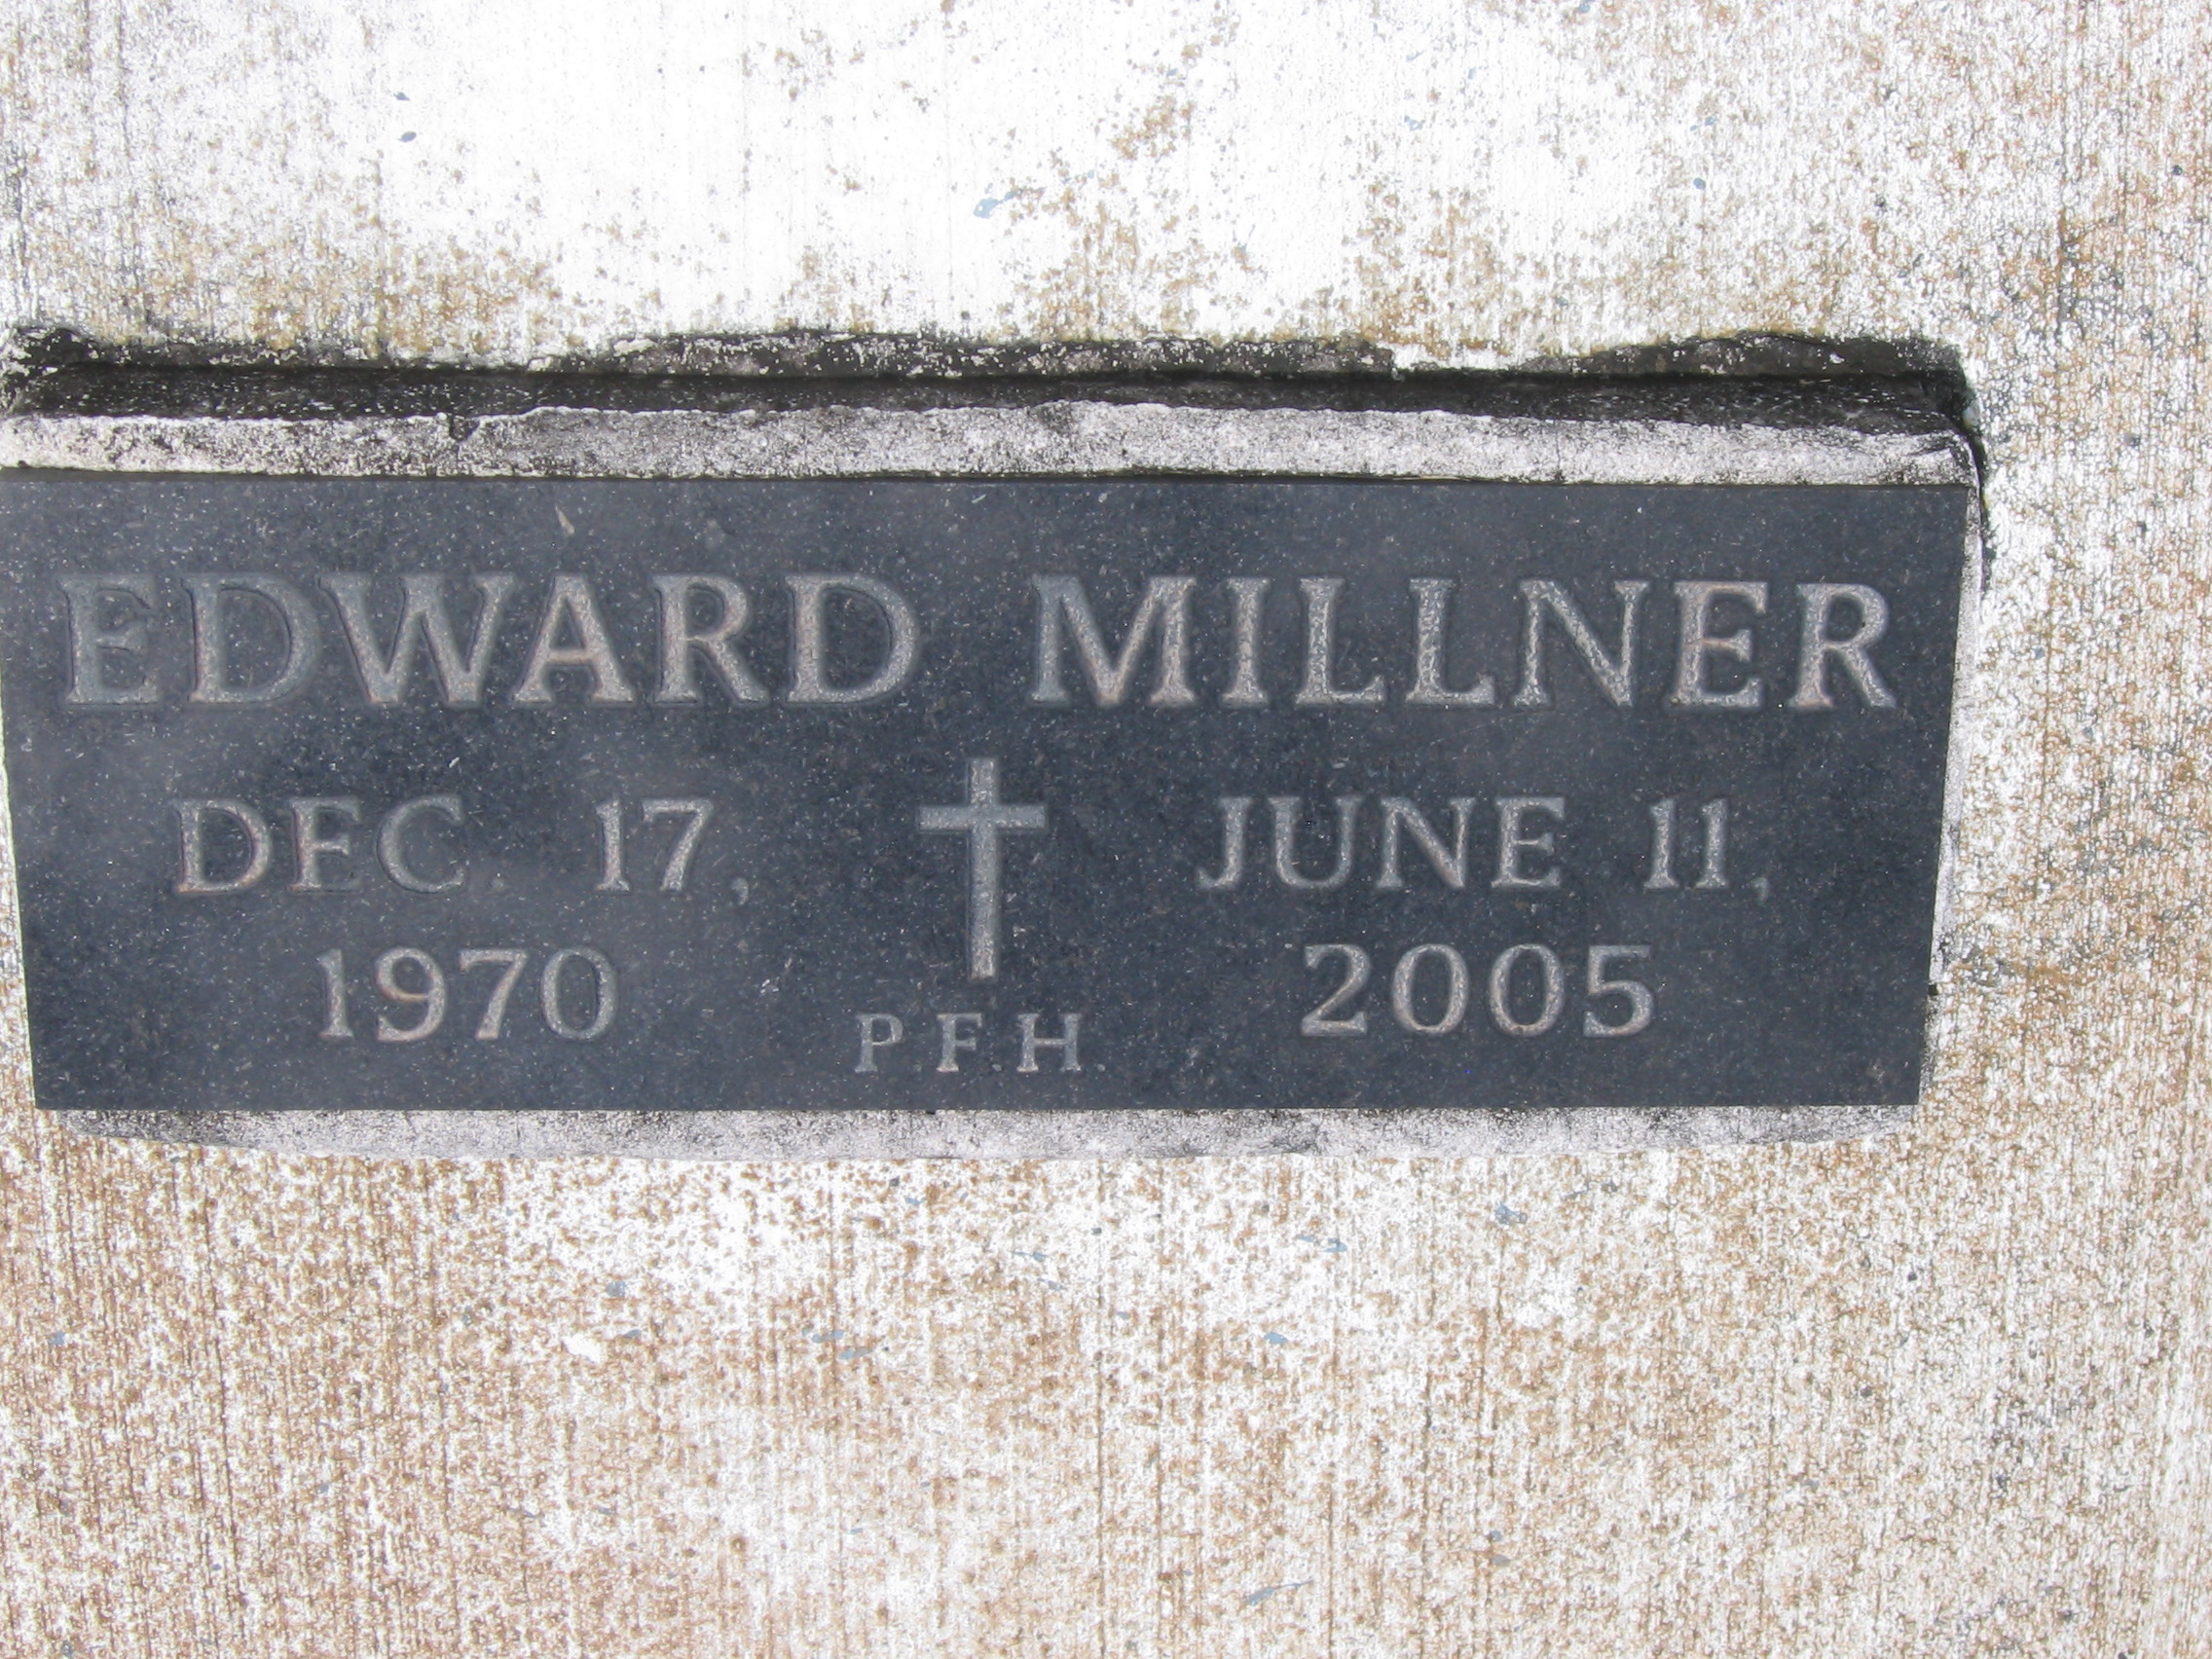 Edward Millner